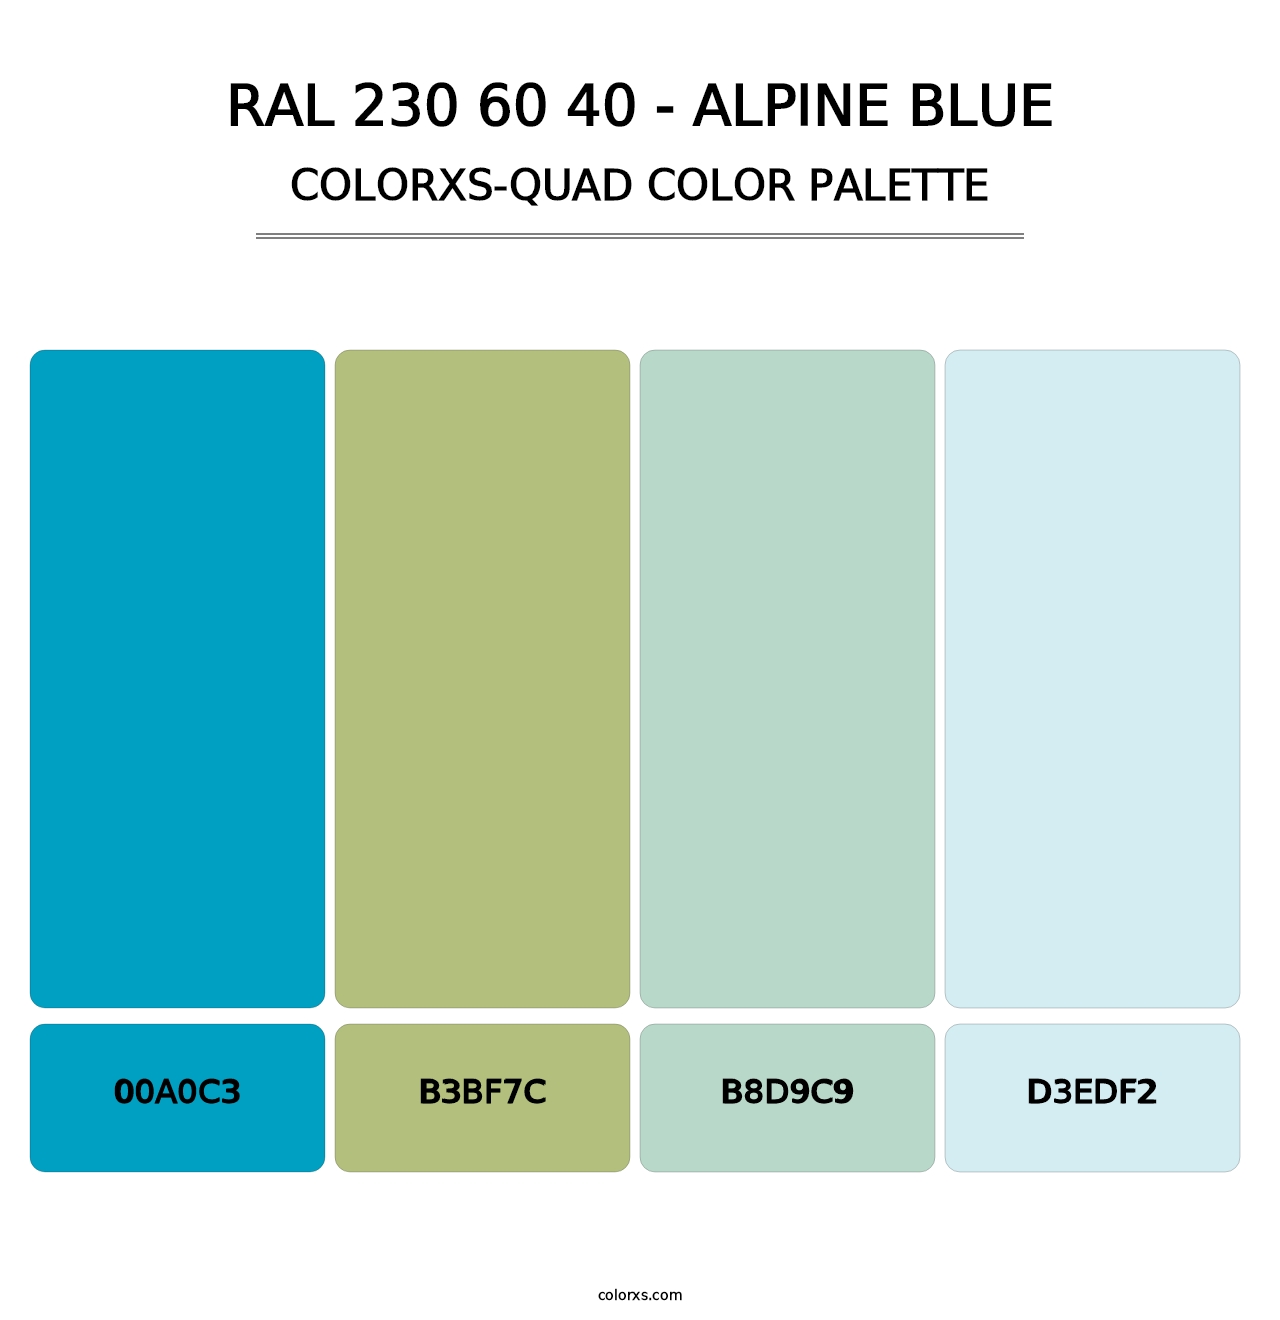 RAL 230 60 40 - Alpine Blue - Colorxs Quad Palette